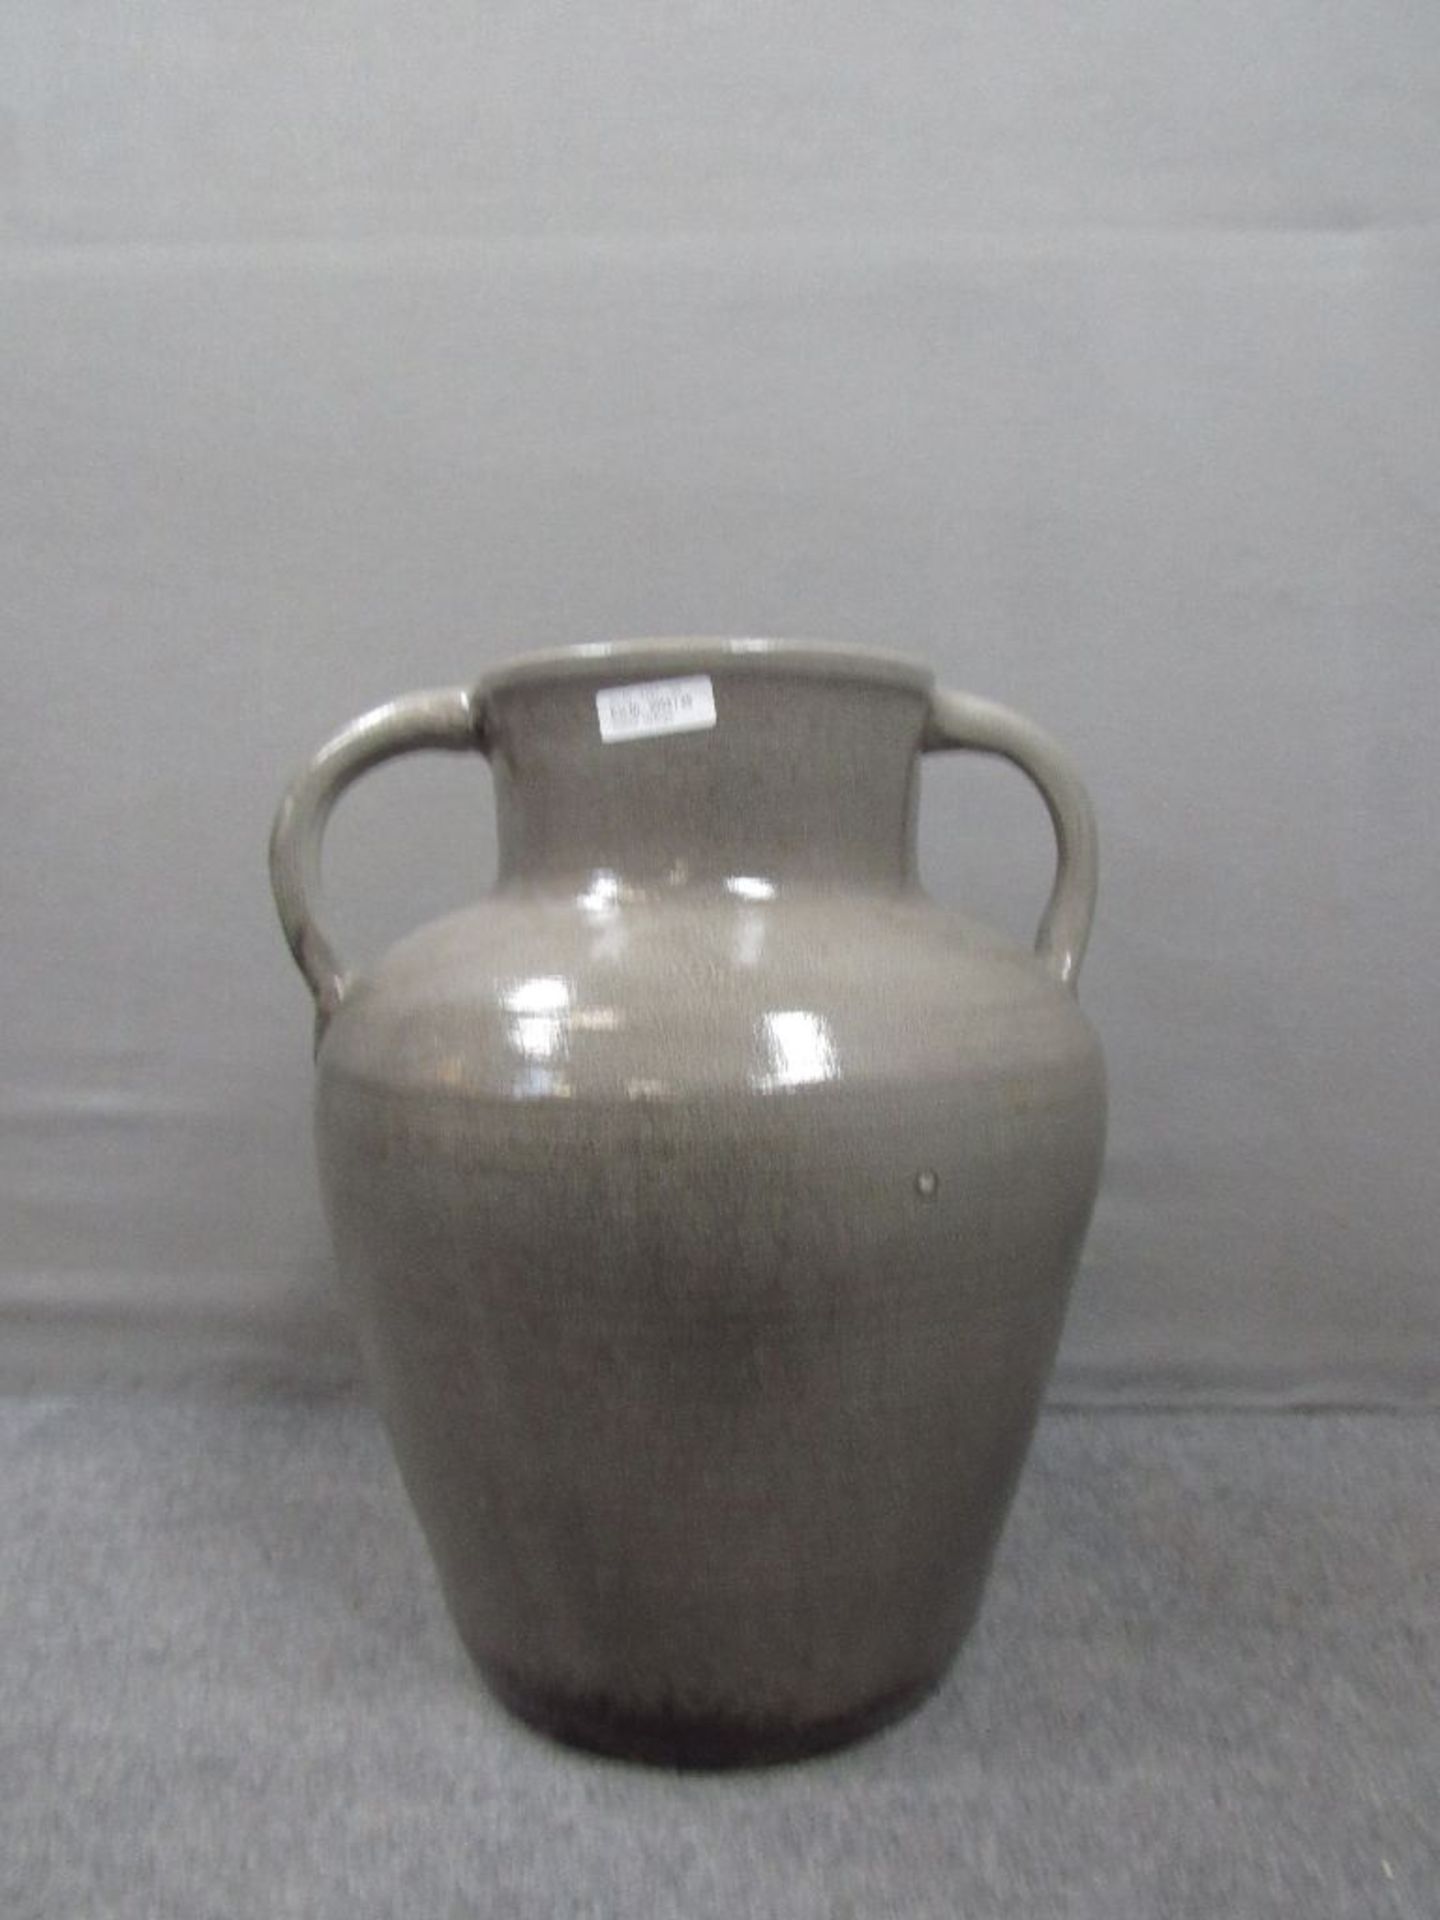 Großer Keramikkrug mit zwei Handhaben unterseits gemarkt 50cm hoch